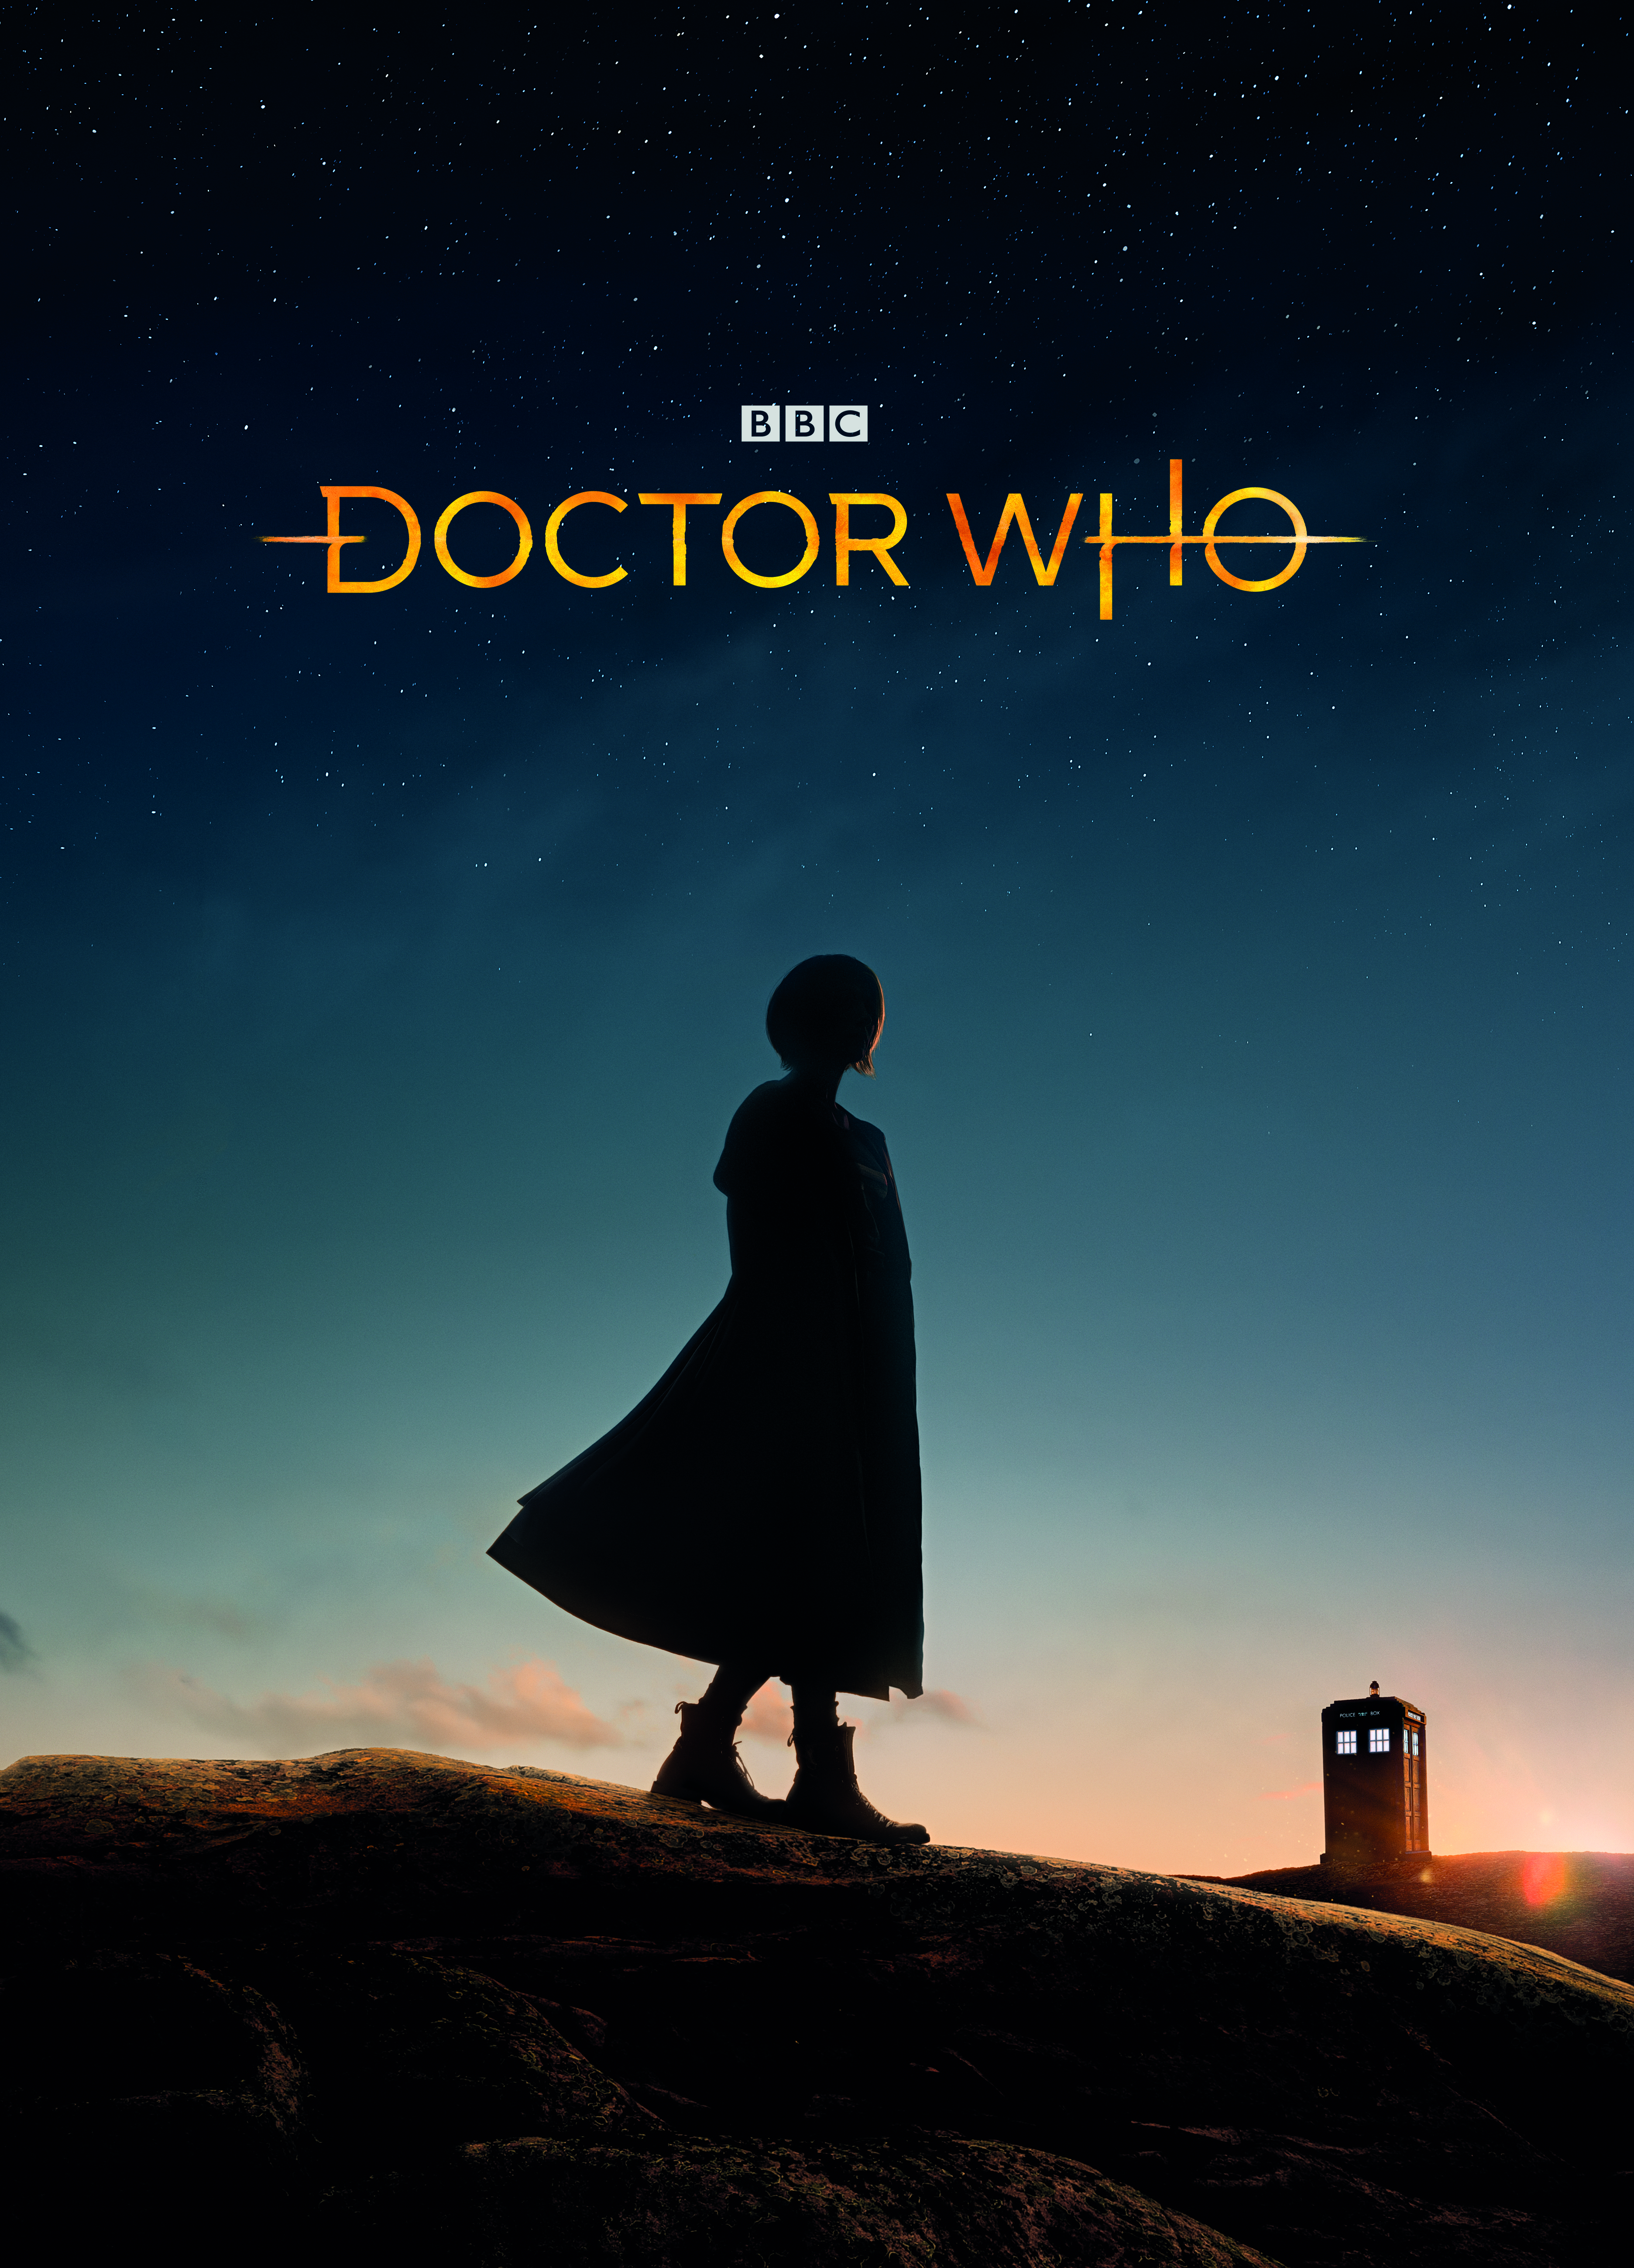 Doctor_Who_Iconic_Logo_A3_Portrait_297x420mm_300dpi_CMYK_AW